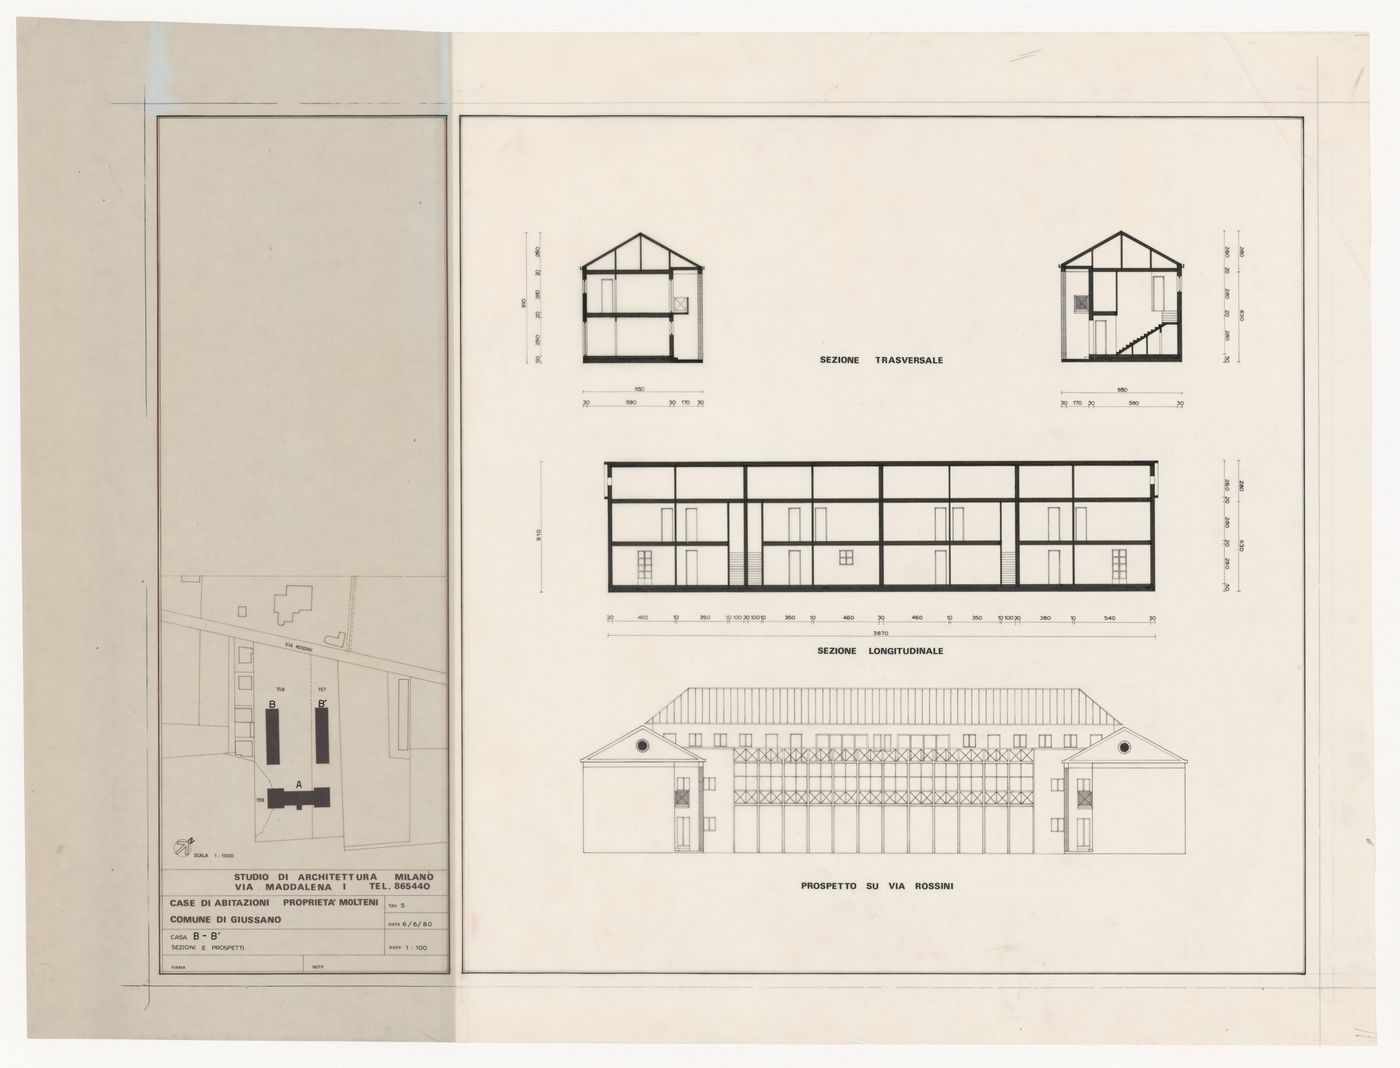 Sections, elevation, and site plan for Case di abitazioni sulla proprietà Molteni, Giussano, Italy